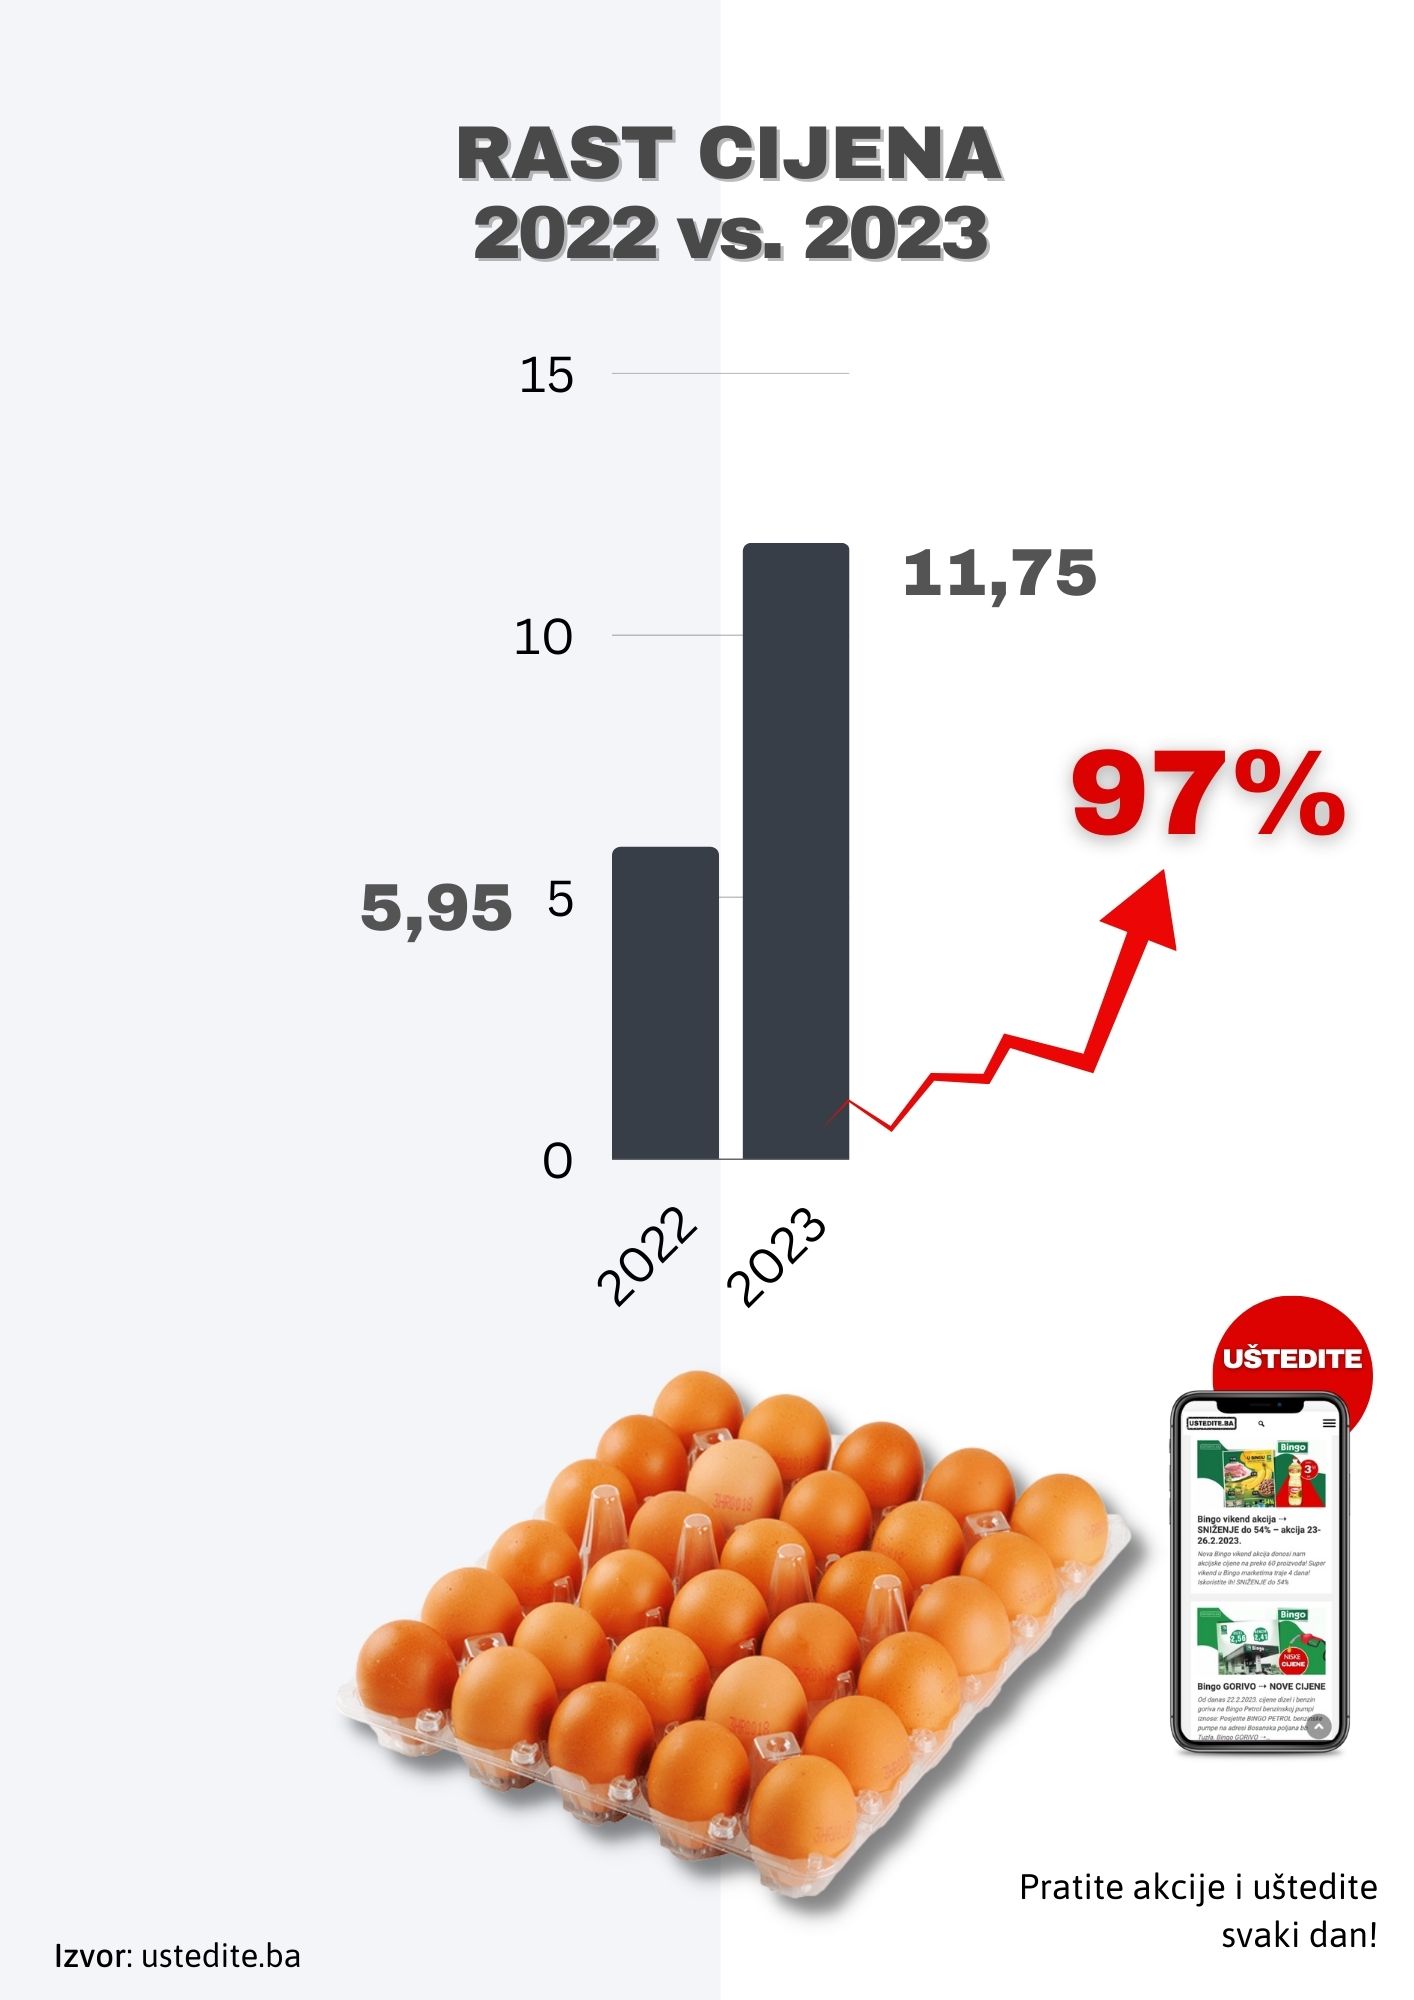 RAST CIJENA u BiH! Cijena jaja porasla za 97% u odnosu na prošlu godinu!